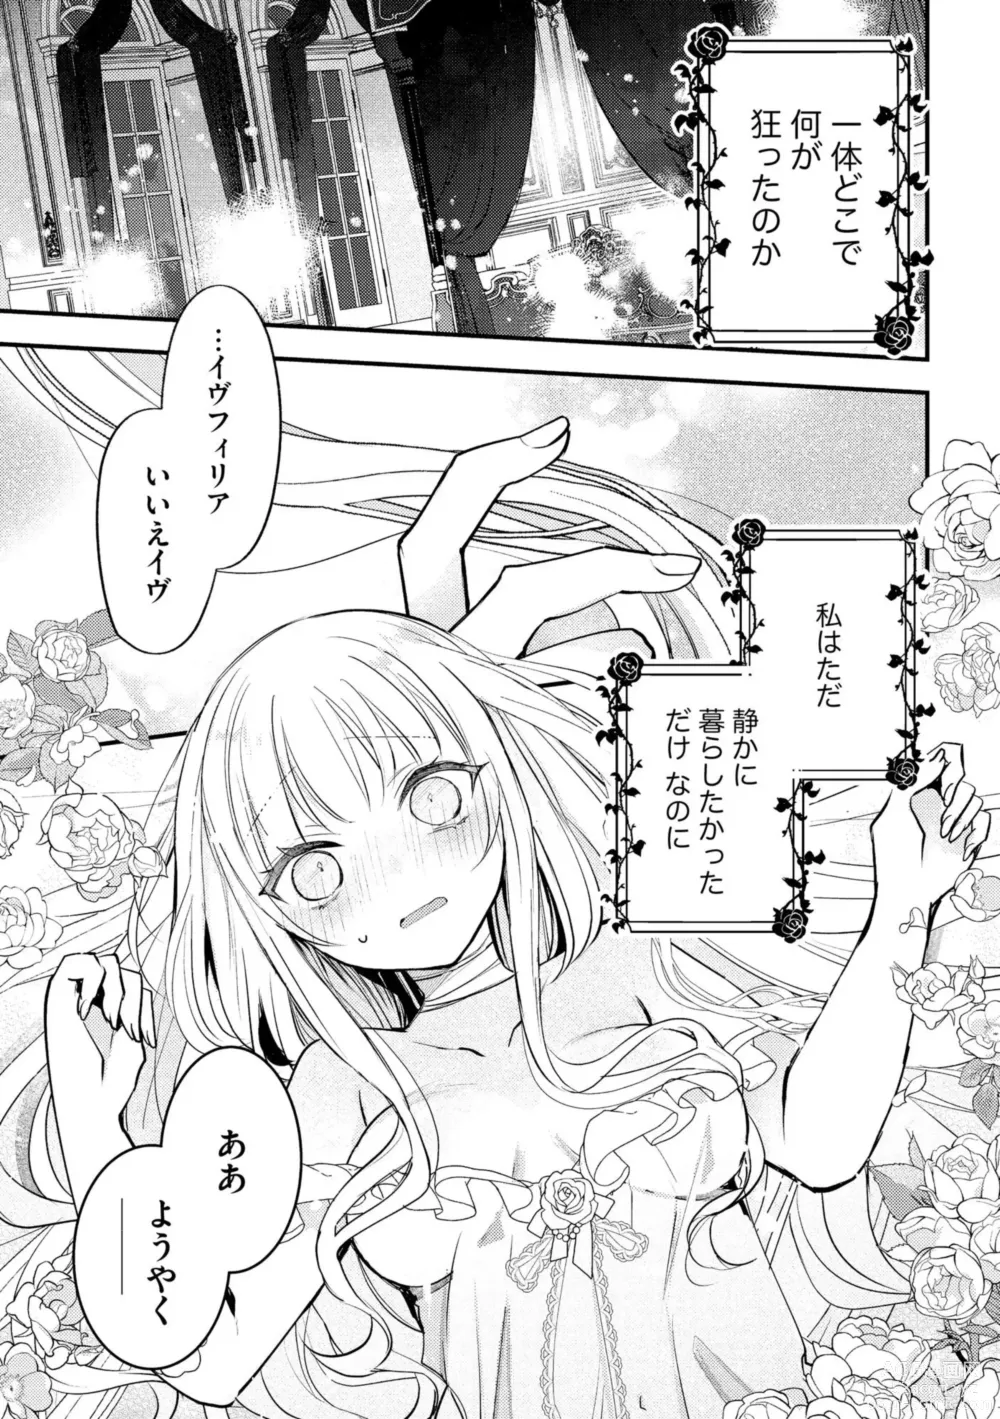 Page 3 of manga Akuyaku Reijou to Kyuuketsu Ouji no Dekiai Keiyaku Bad End ￫ Kenzoku Route no Amai Yotogi 1